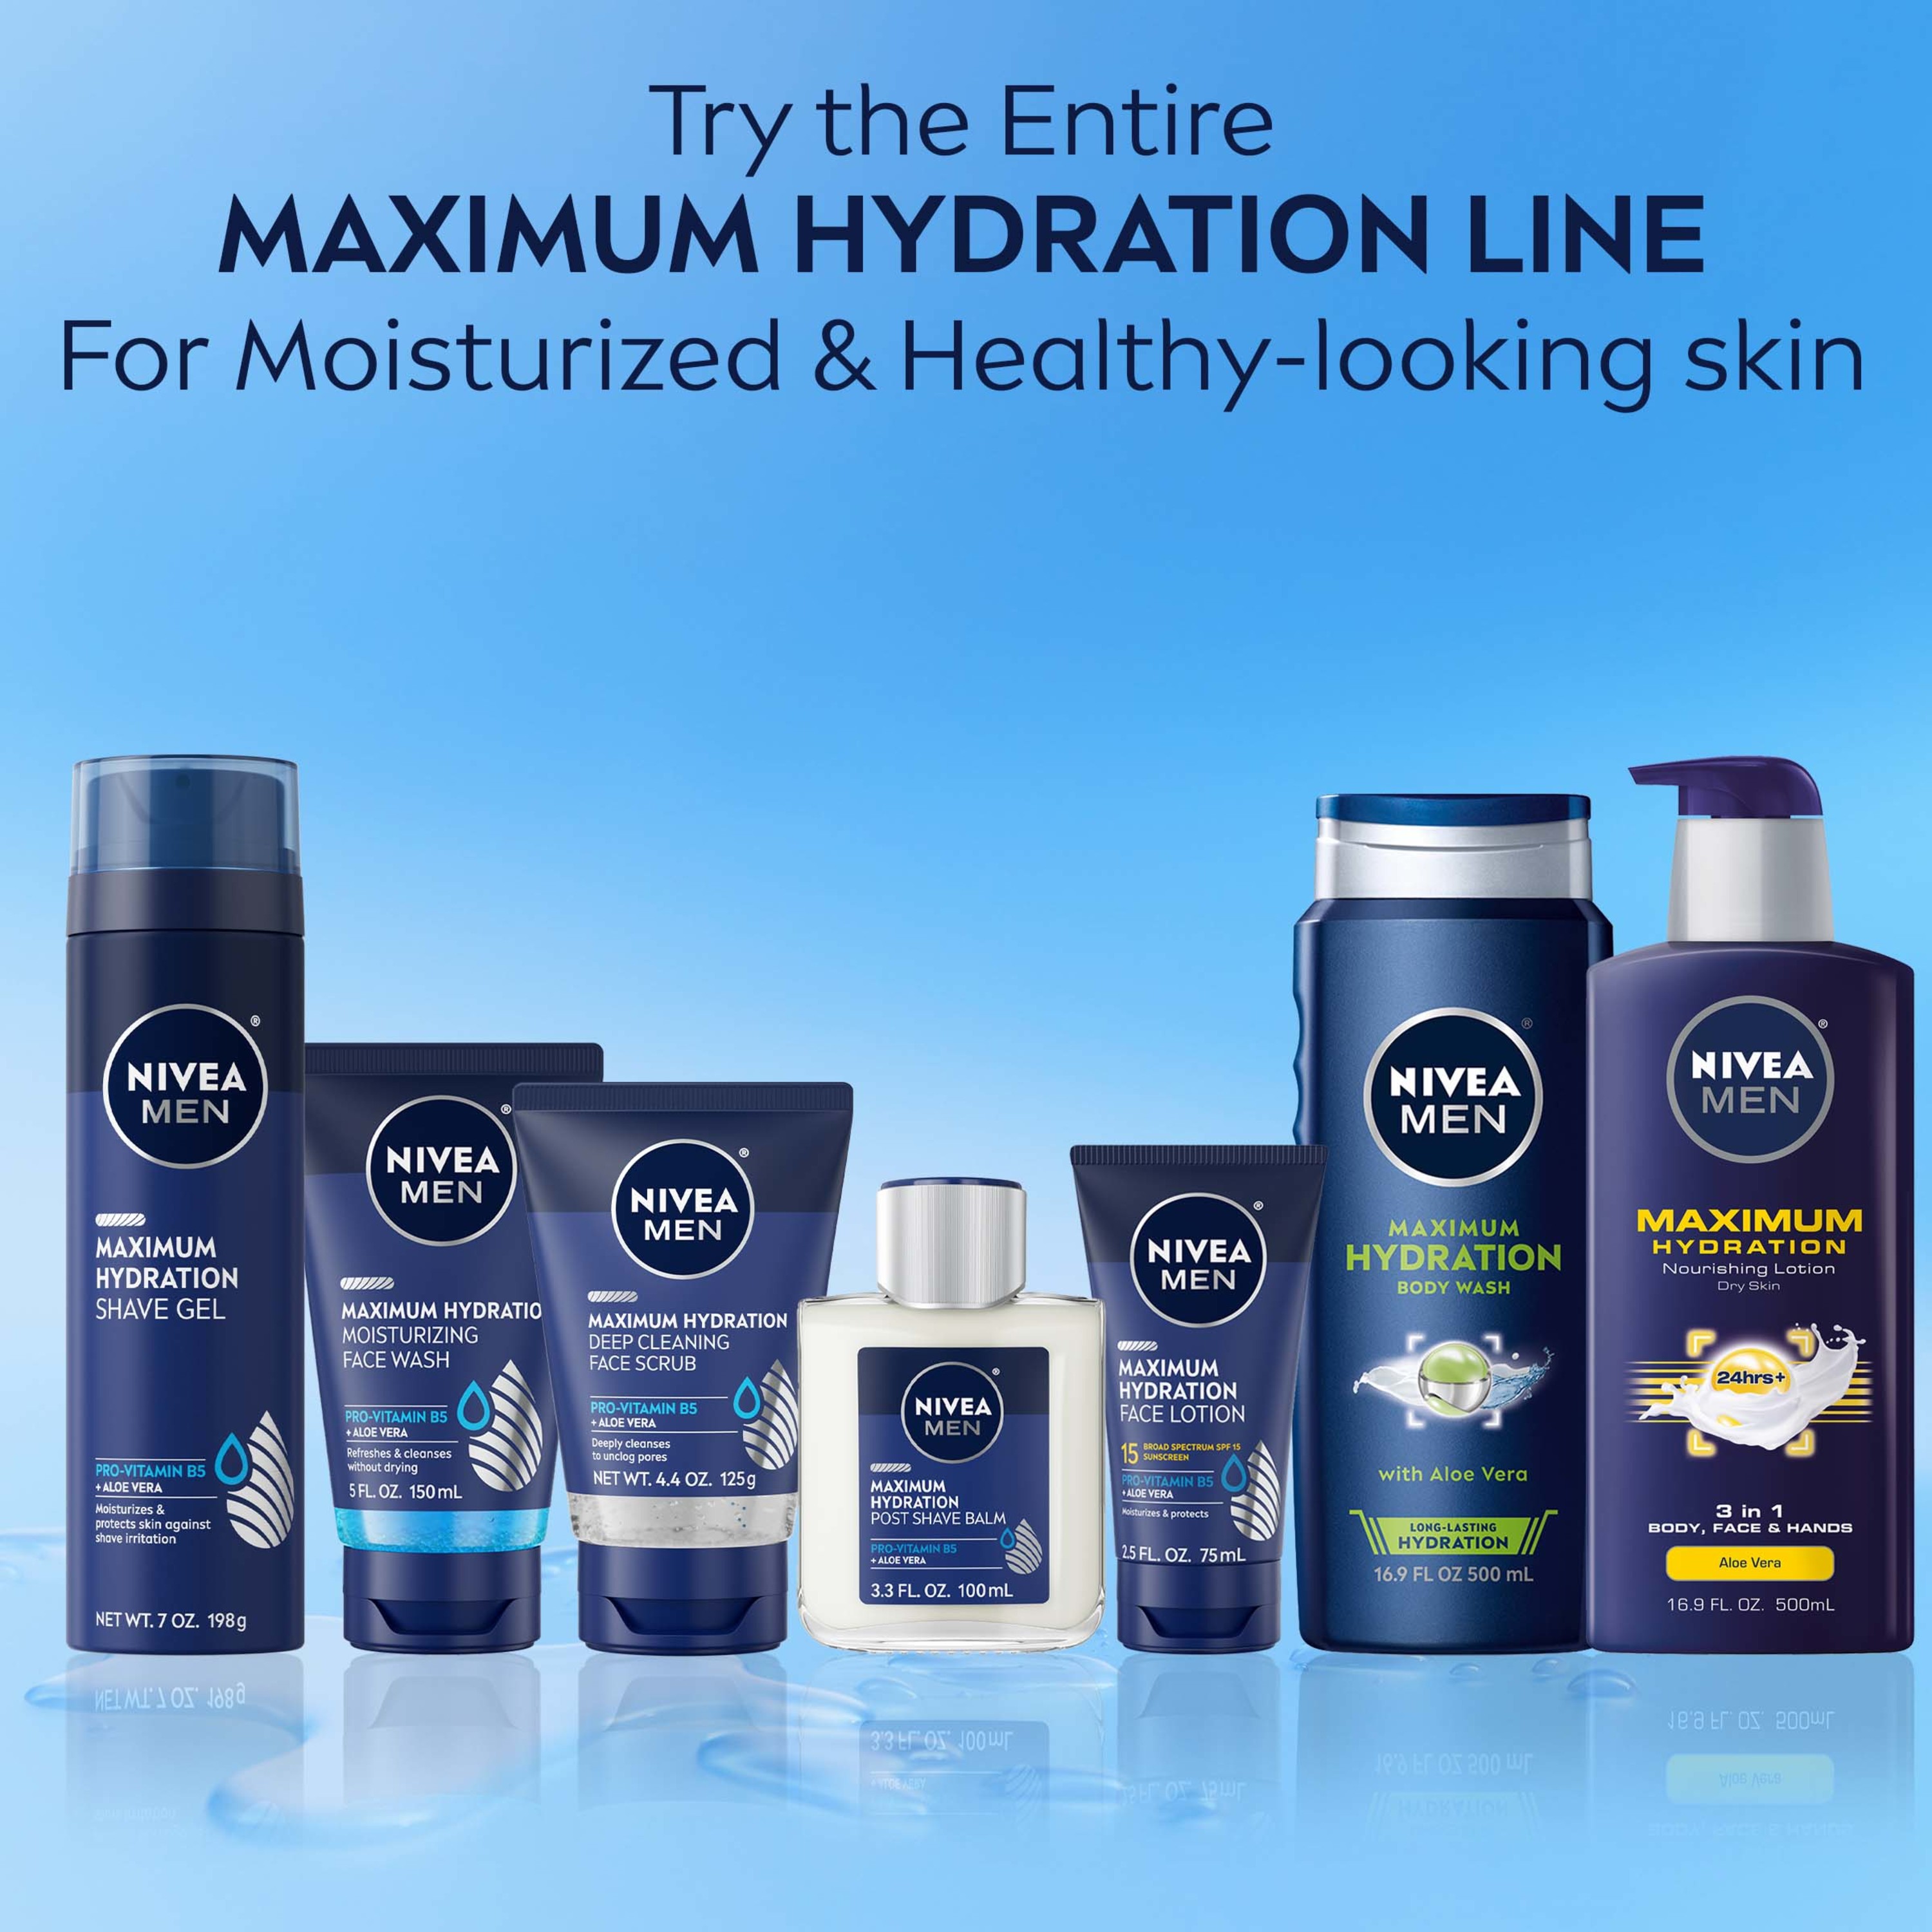 NIVEA MEN Maximum Hydration Moisturizing Face Wash, 5 Fl Oz Tube - image 11 of 13